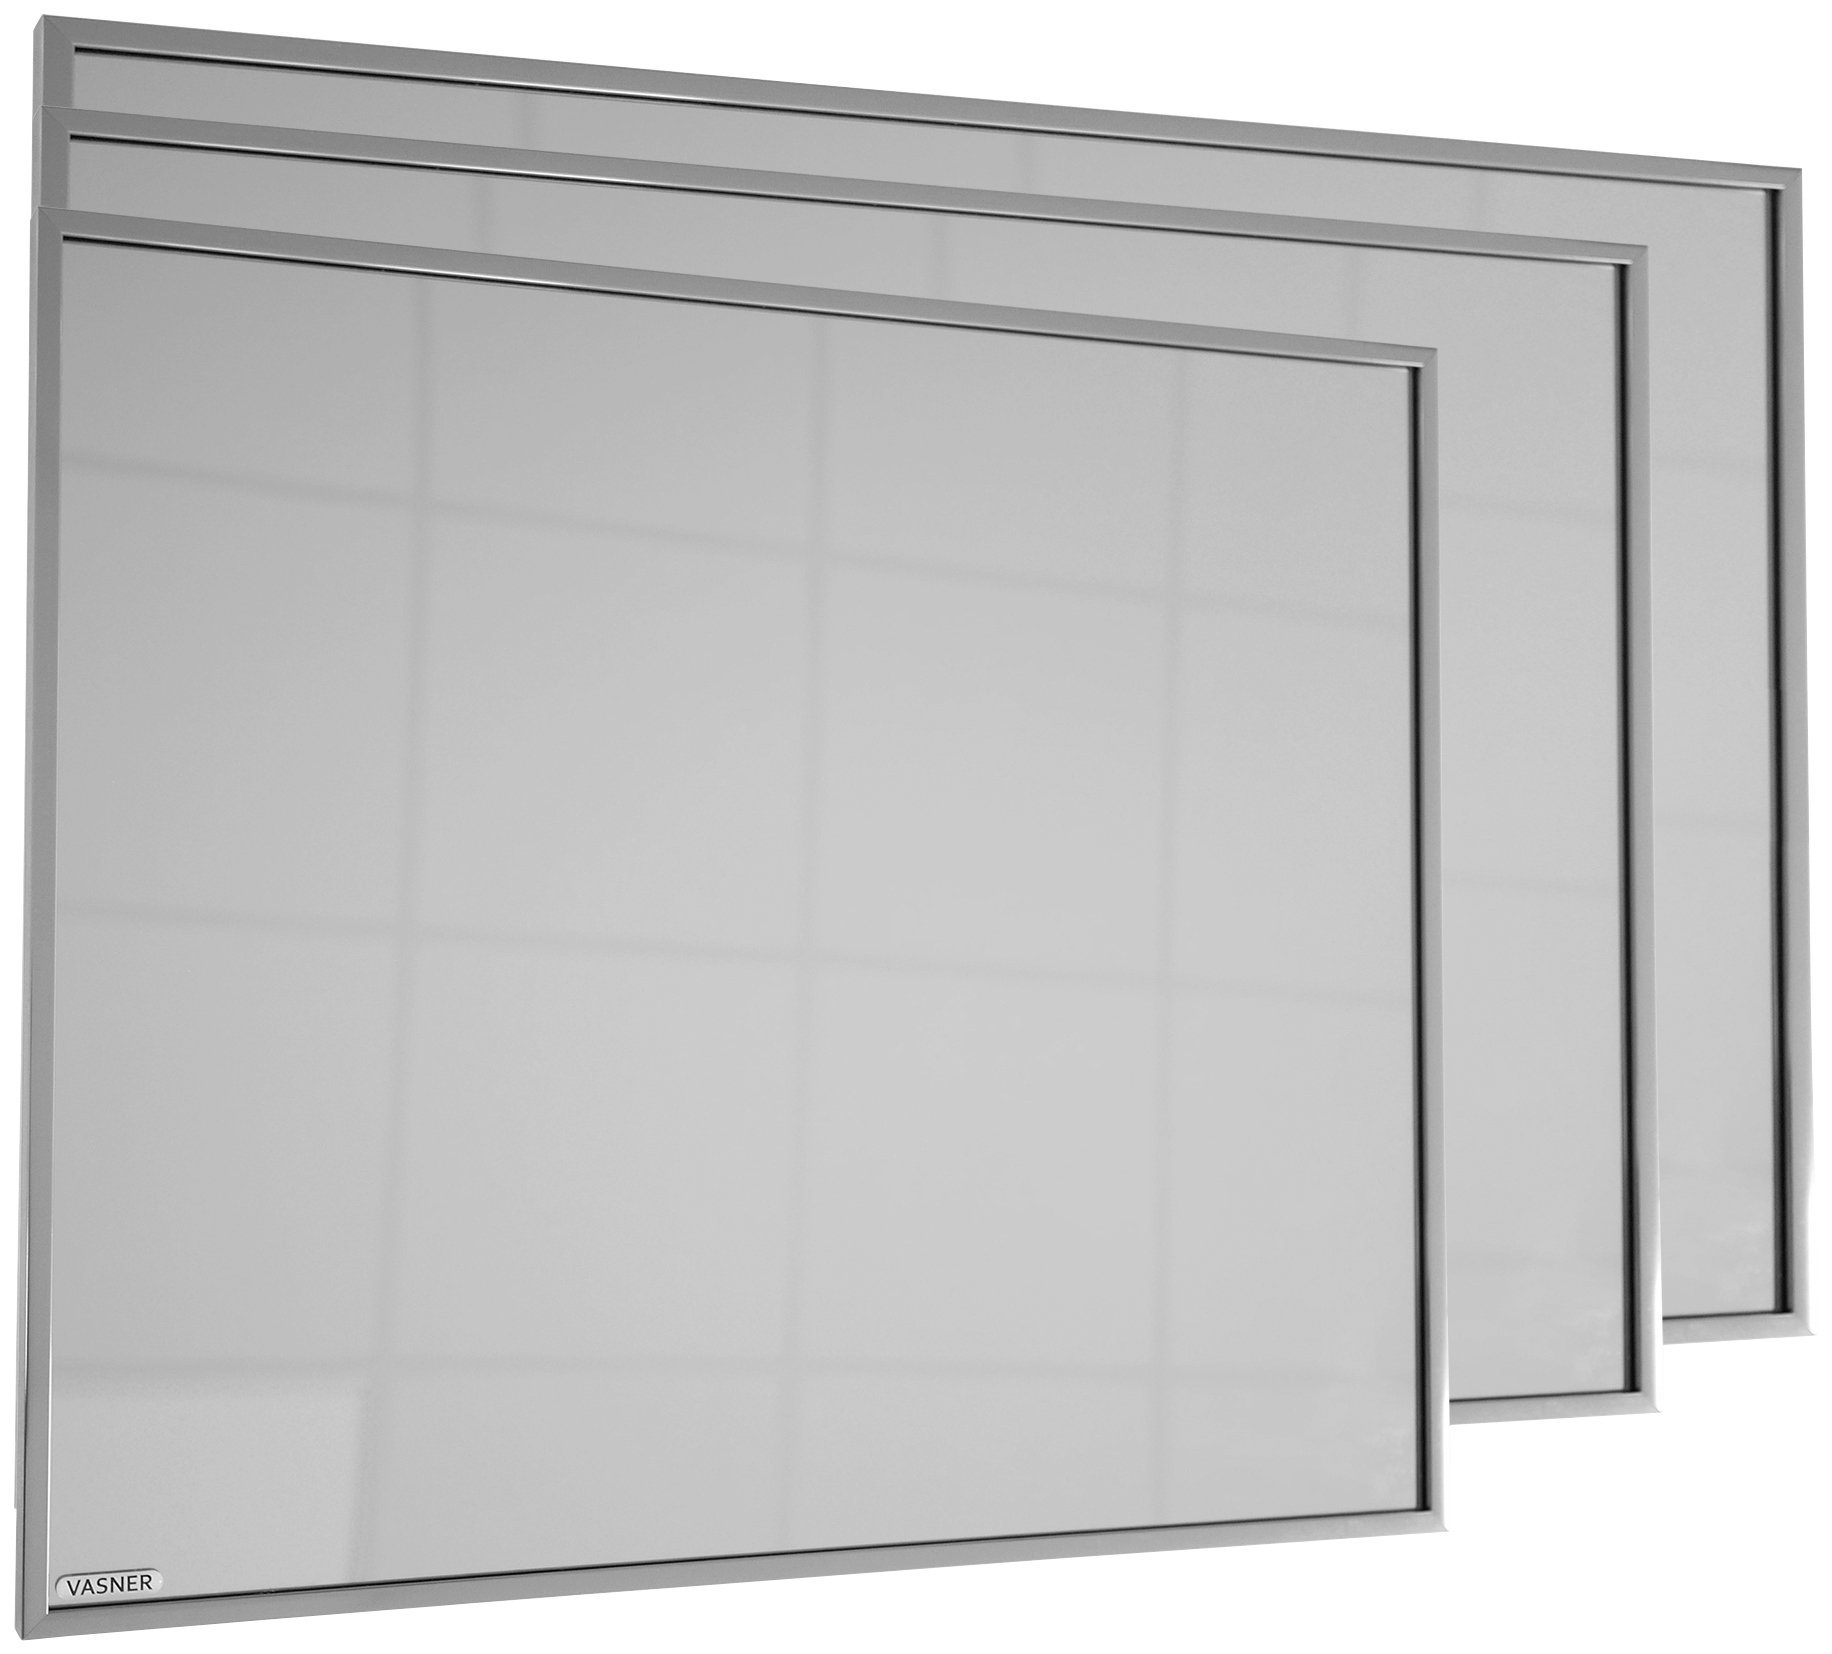 900 900, Vasner Zipris S W, Infrarotheizung mit Spiegelheizung Titan-Rahmen